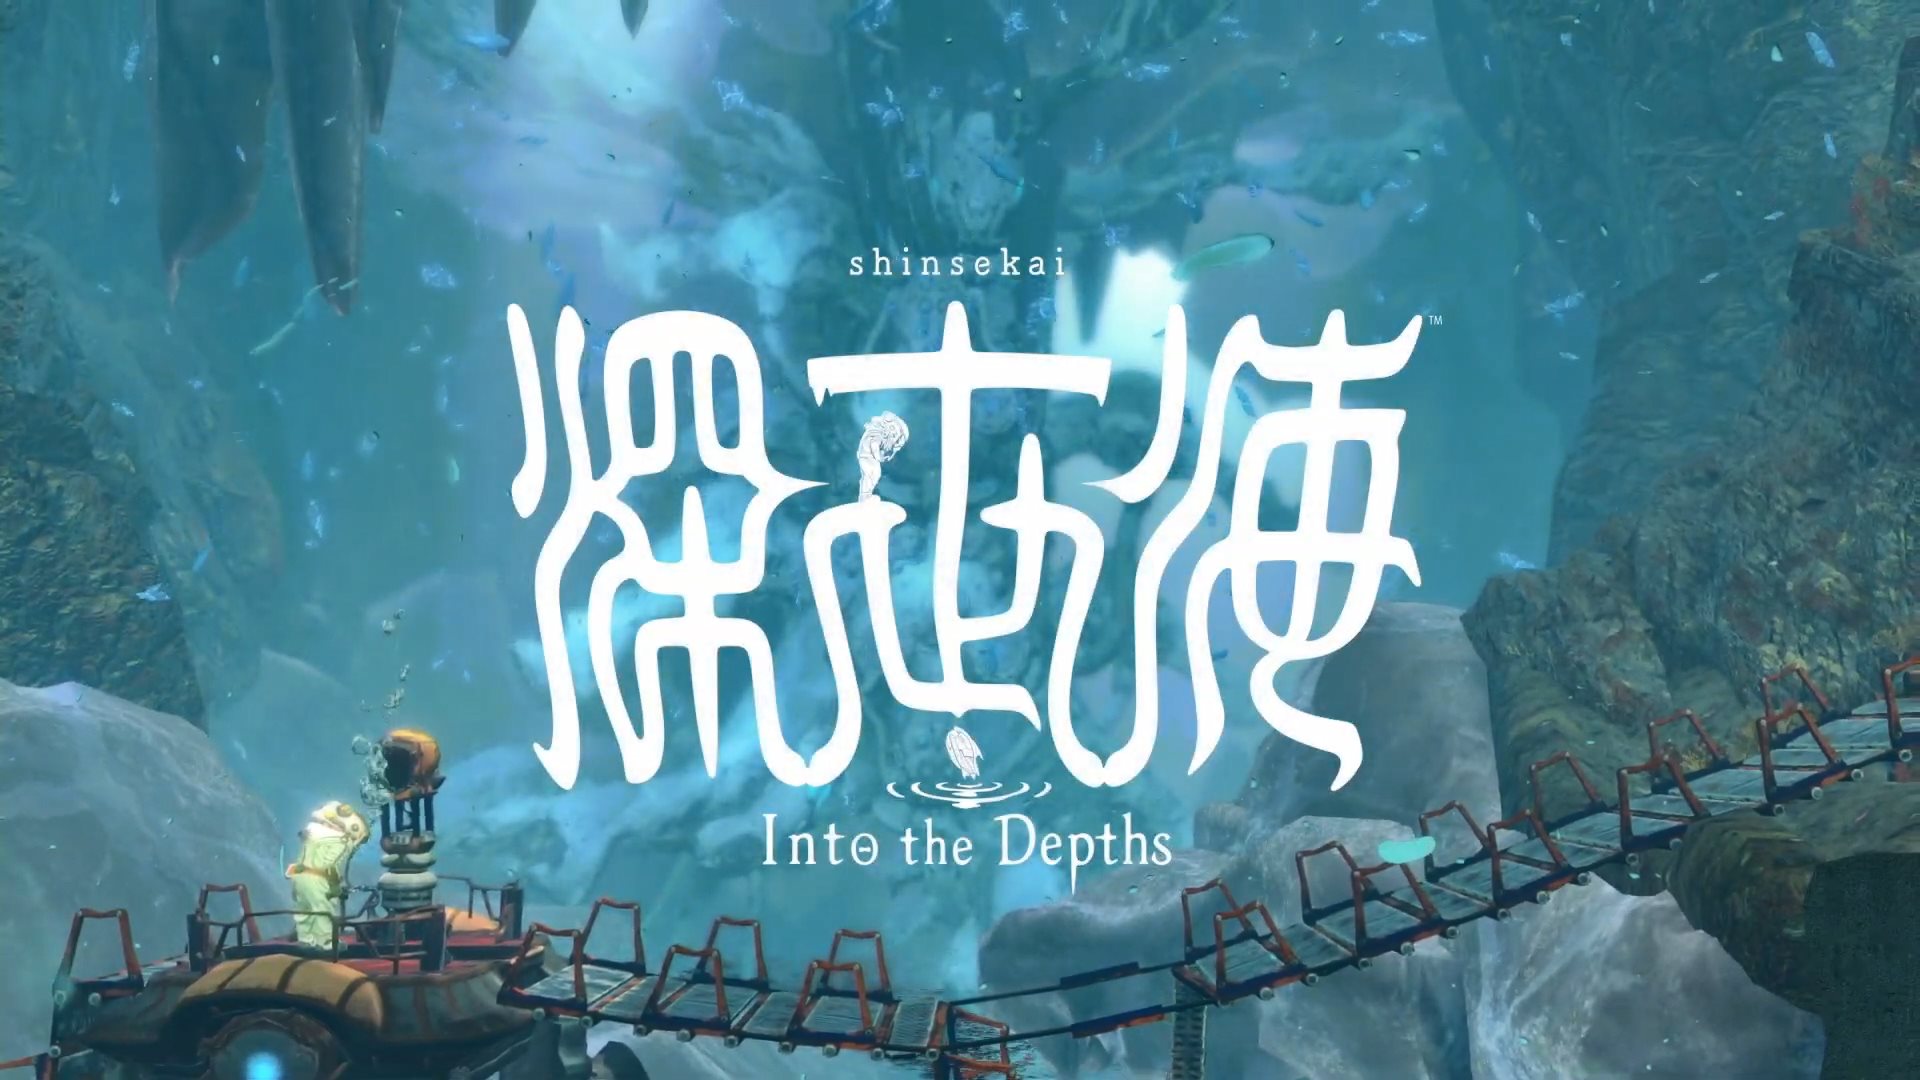 深世海 Shinsekai: Into the Depths 一款深入世界海底为主的冒险游戏